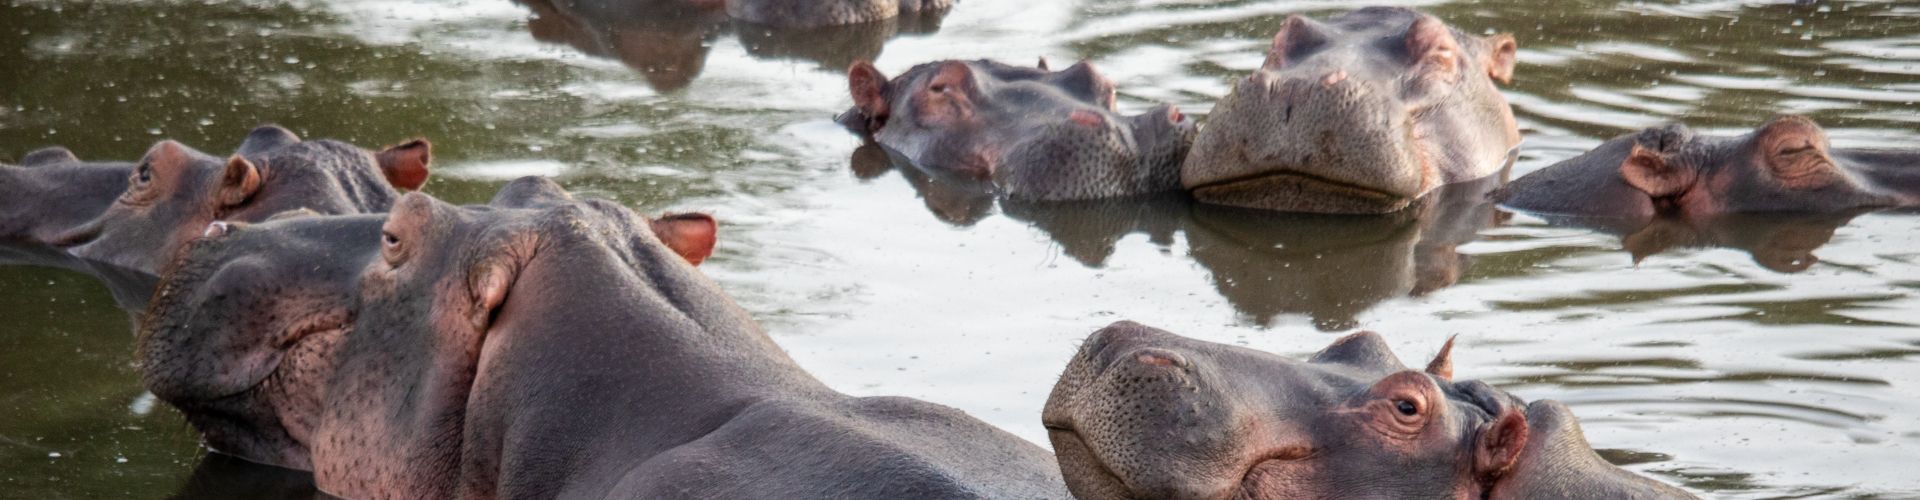 Piscina de hipopótamos en el Parque Safari del Lago Manyara